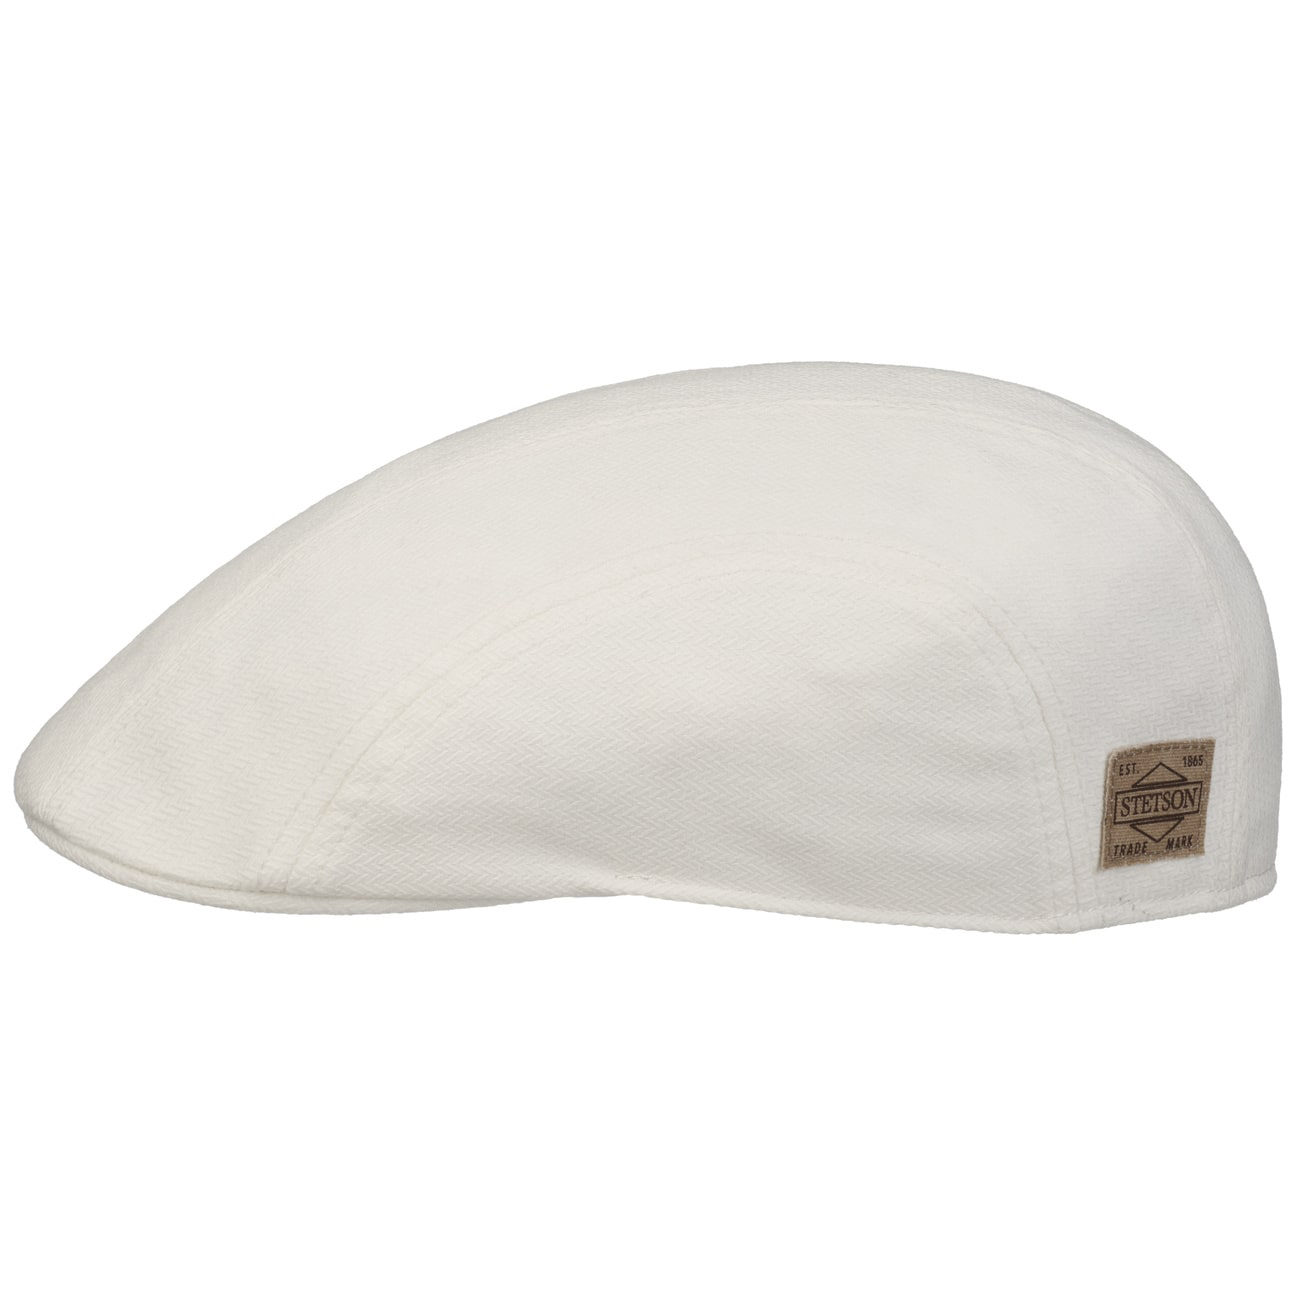 Stetson - Unlined Cotton Flat Cap - White